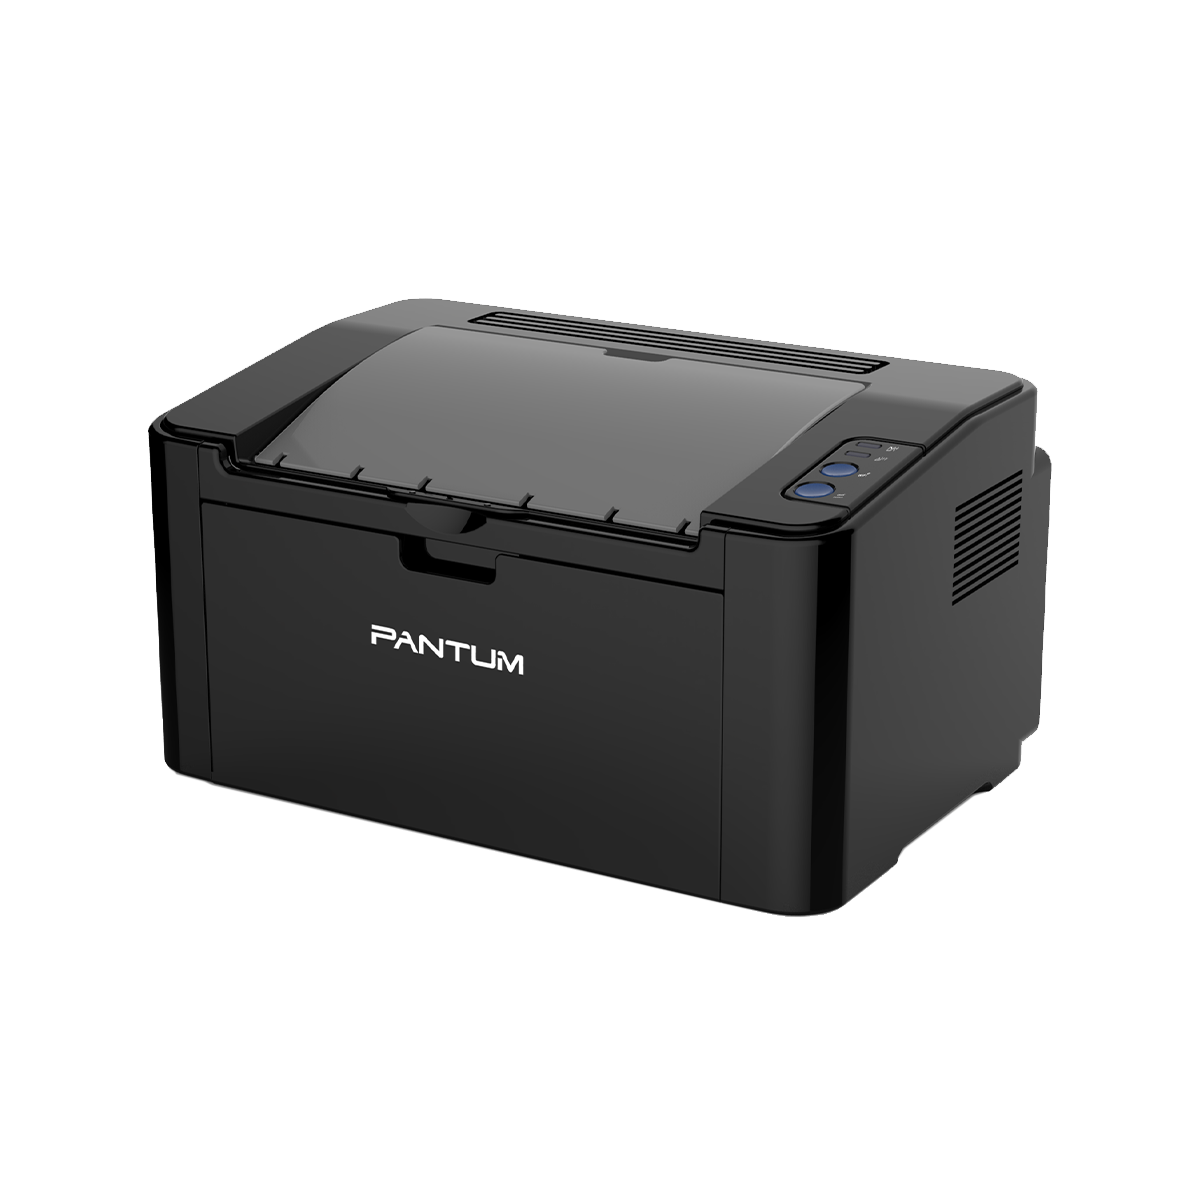 PANTUM P2516 Mono laser single function printer